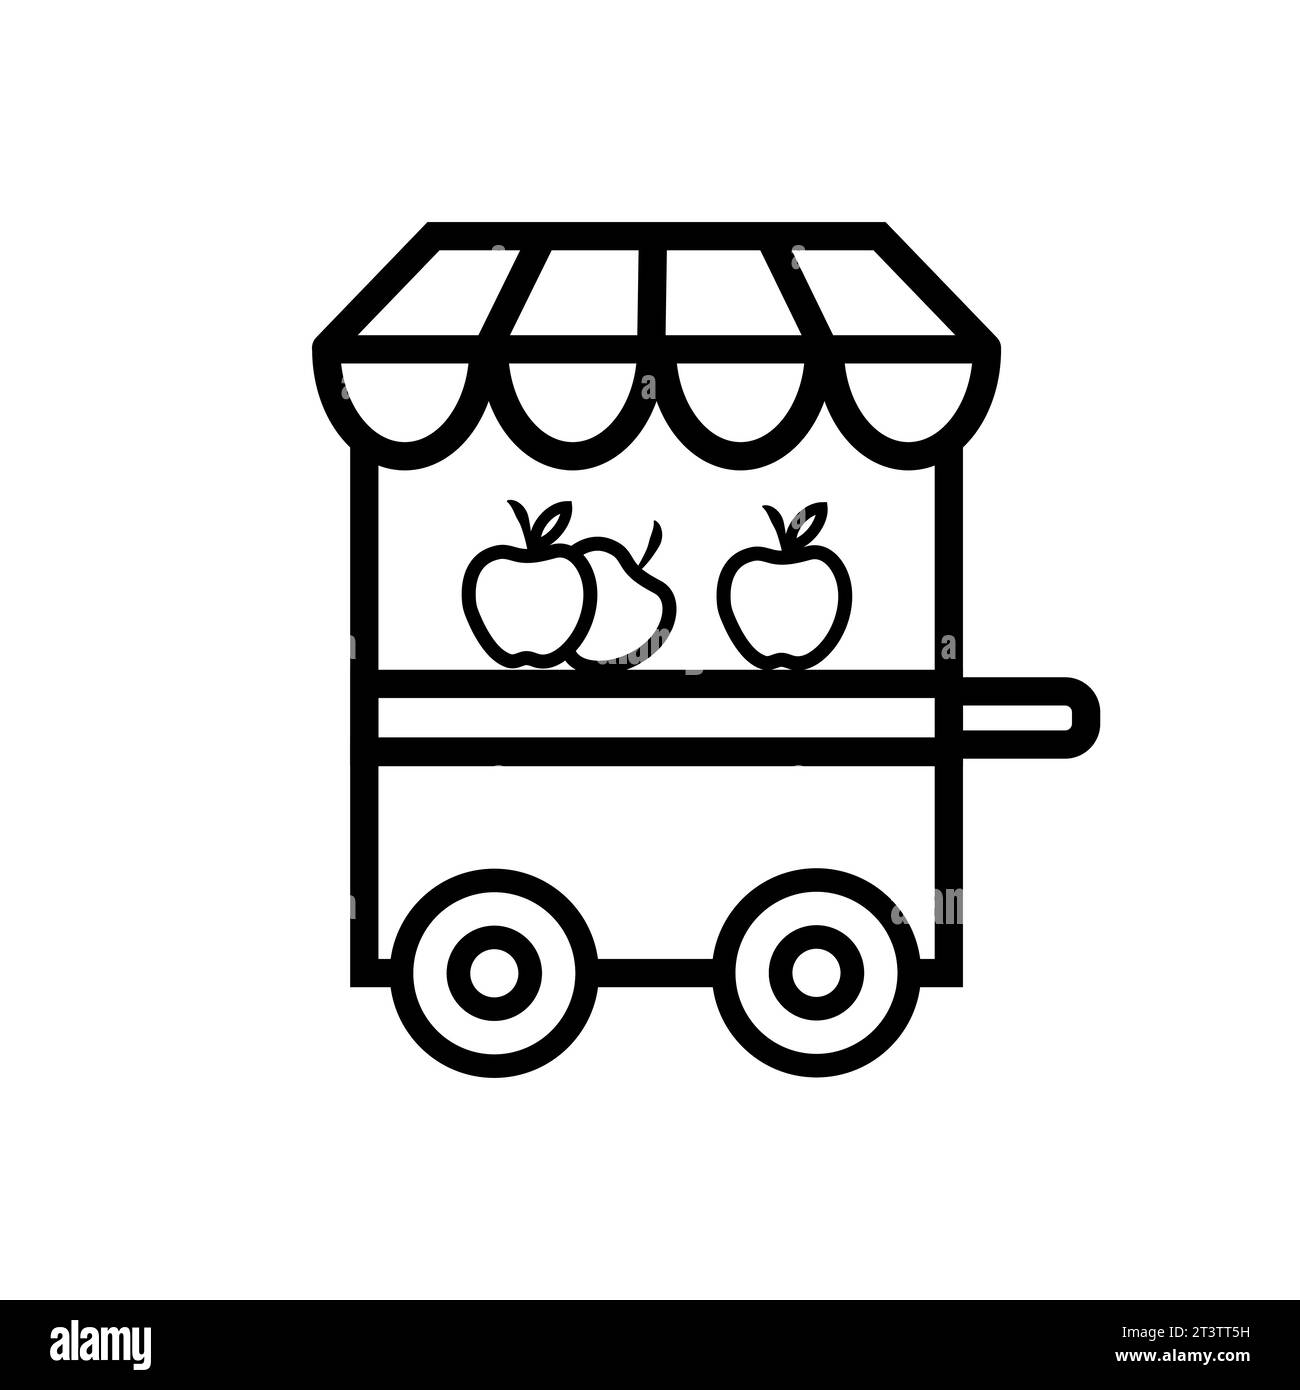 Ikone des Obstgeschäfts. Lineare Art Obst Shop Outline Icon Vektor-Illustration Stock Vektor